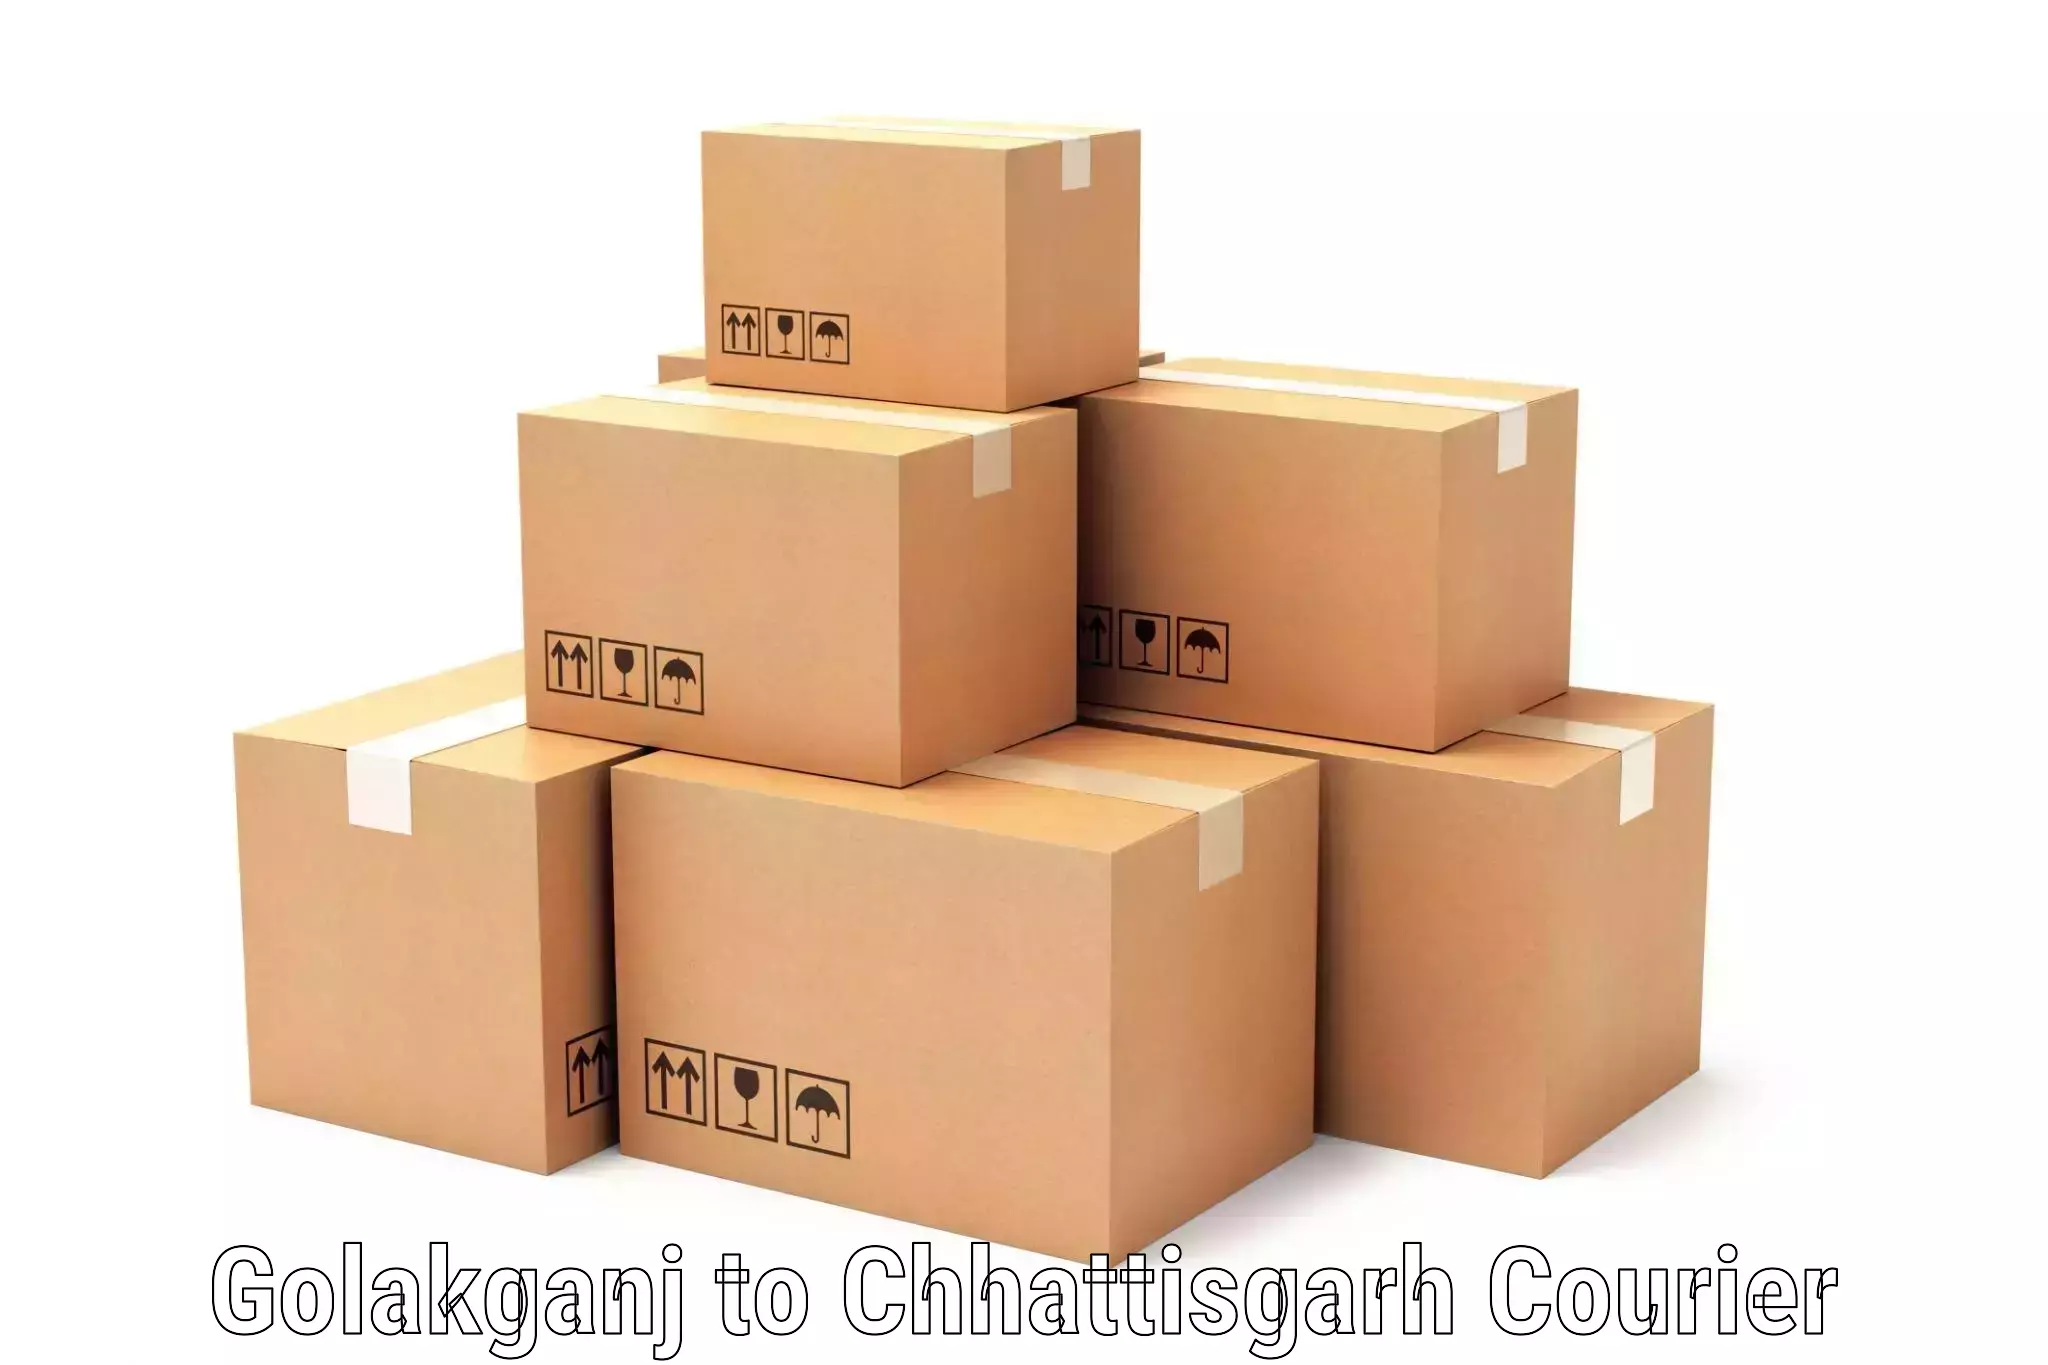 Easy access courier services Golakganj to Bijapur Chhattisgarh